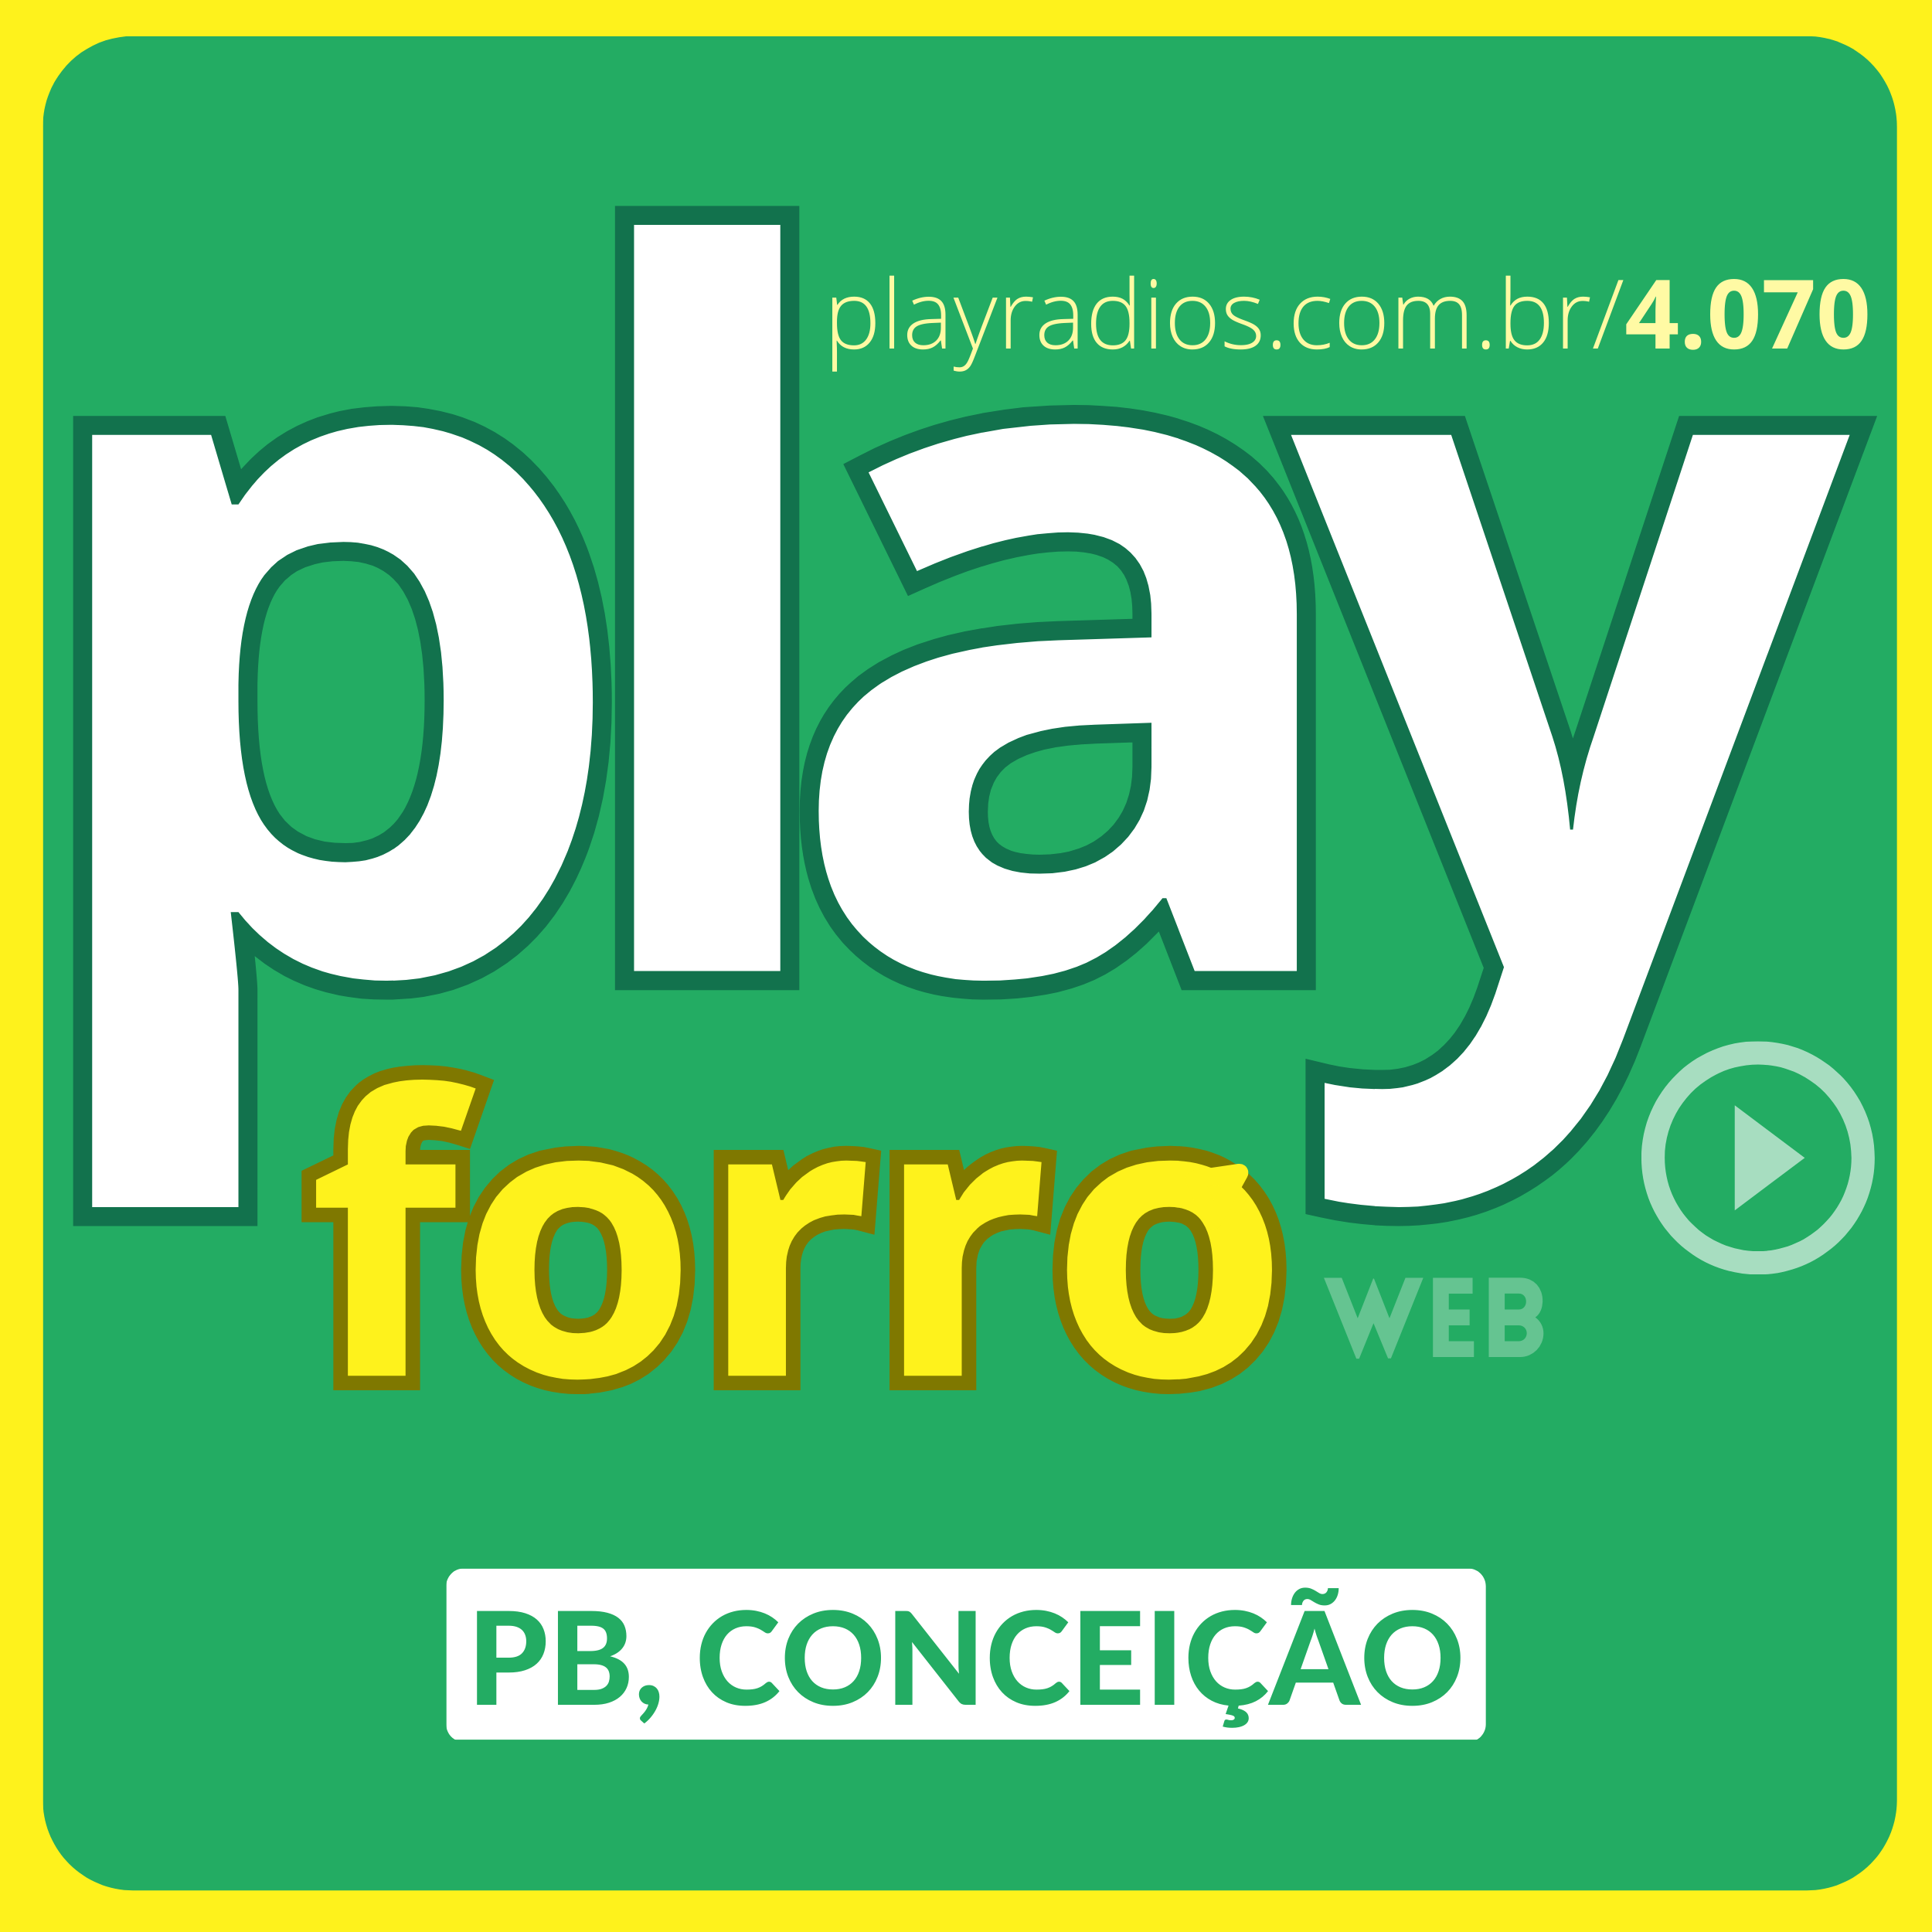 PlayForró Conceição